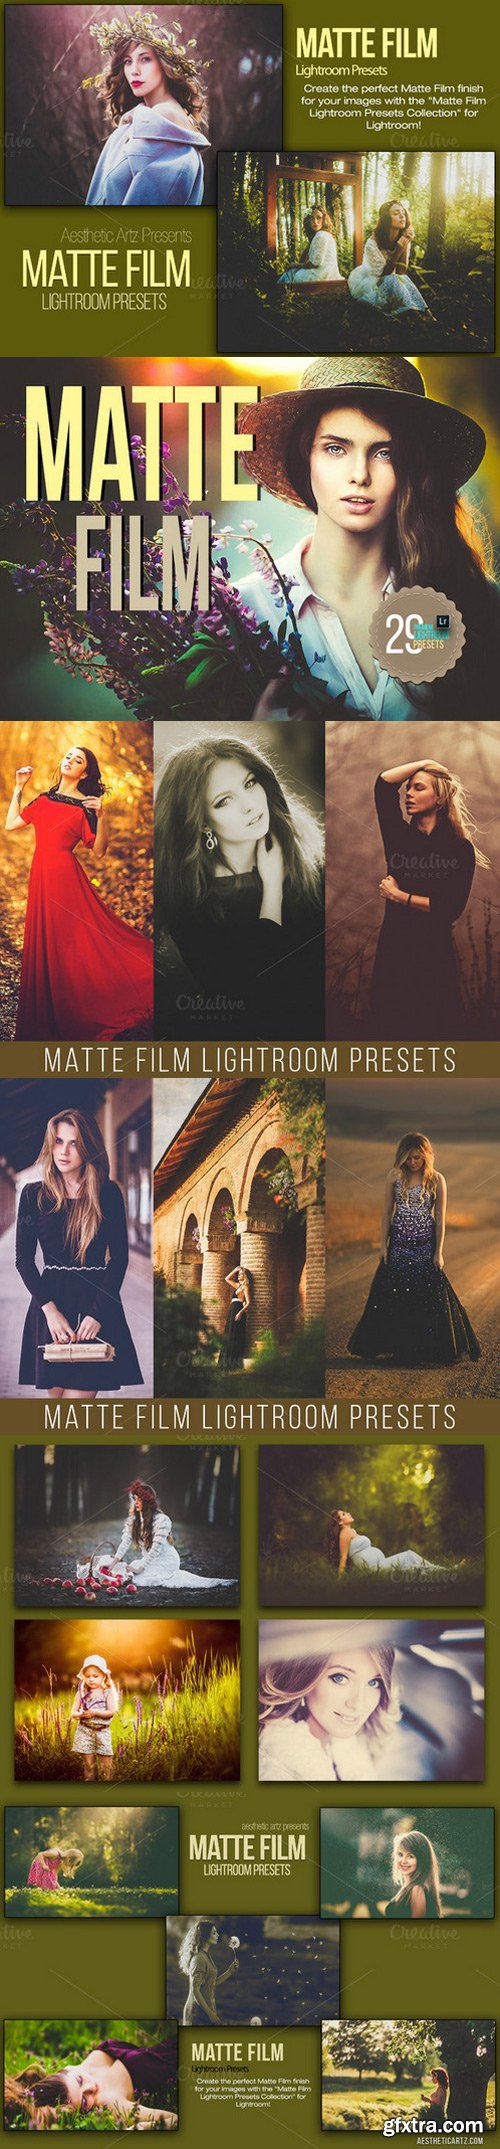 CM - Matte Film Lightroom Presets 39500